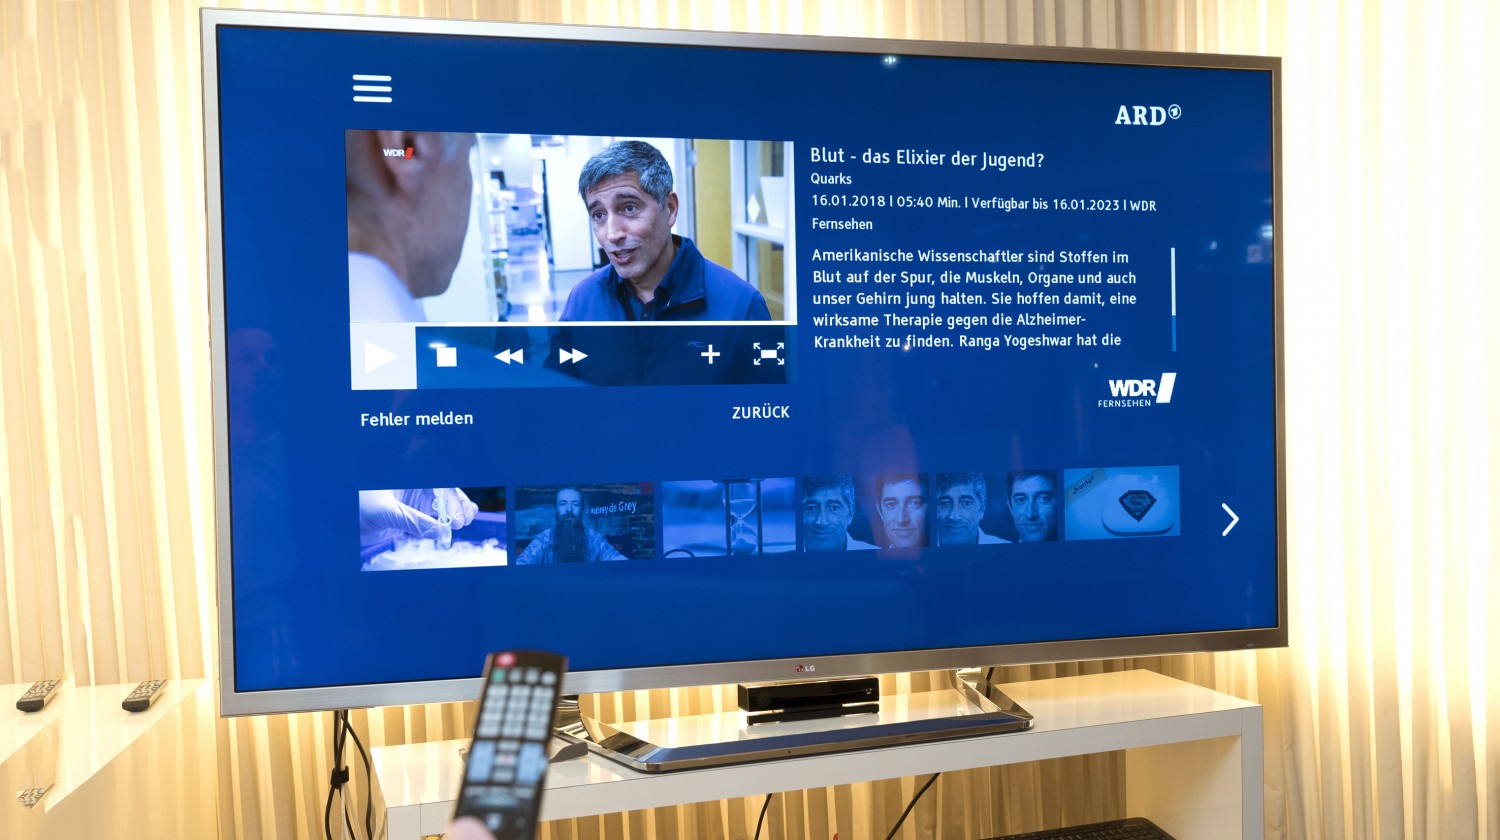 Smart Home Smartes Fernsehen: ARD überarbeitet Startleiste für HbbTV - News, Bild 1